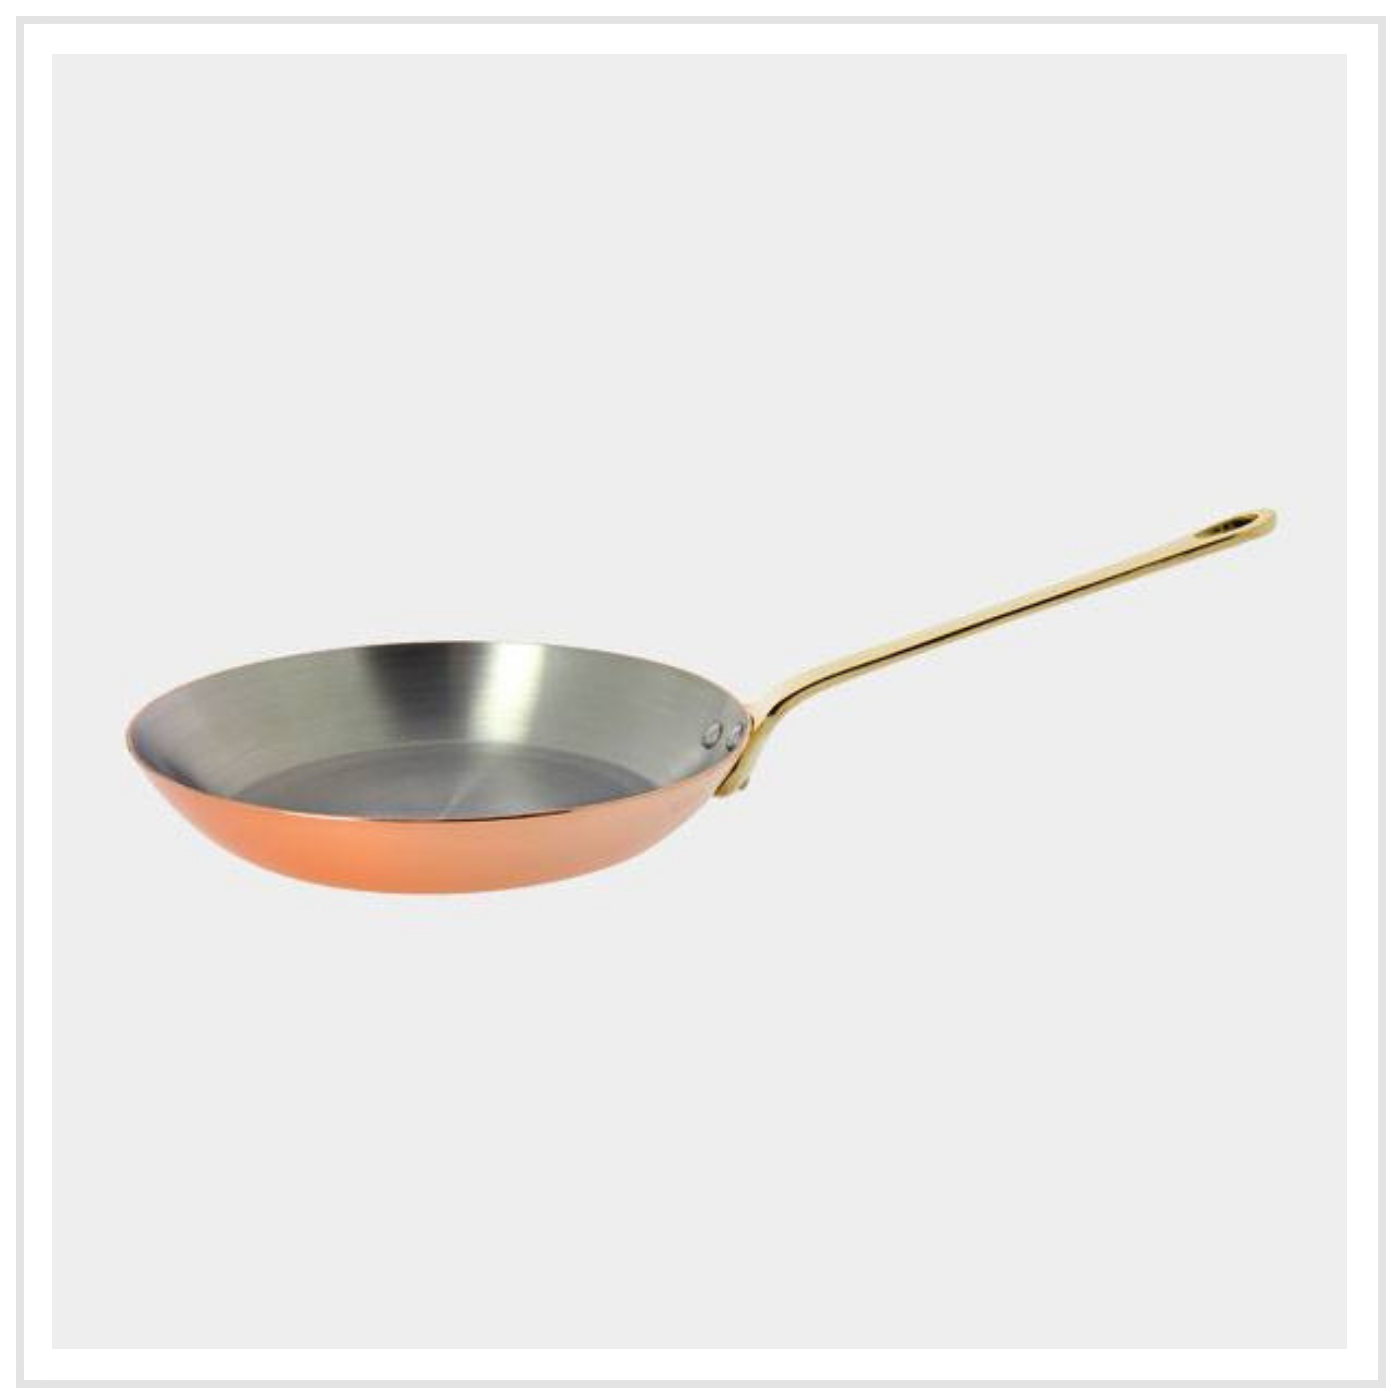 De Buyer Copper Frying Pan with Bronze Handle - 24cm